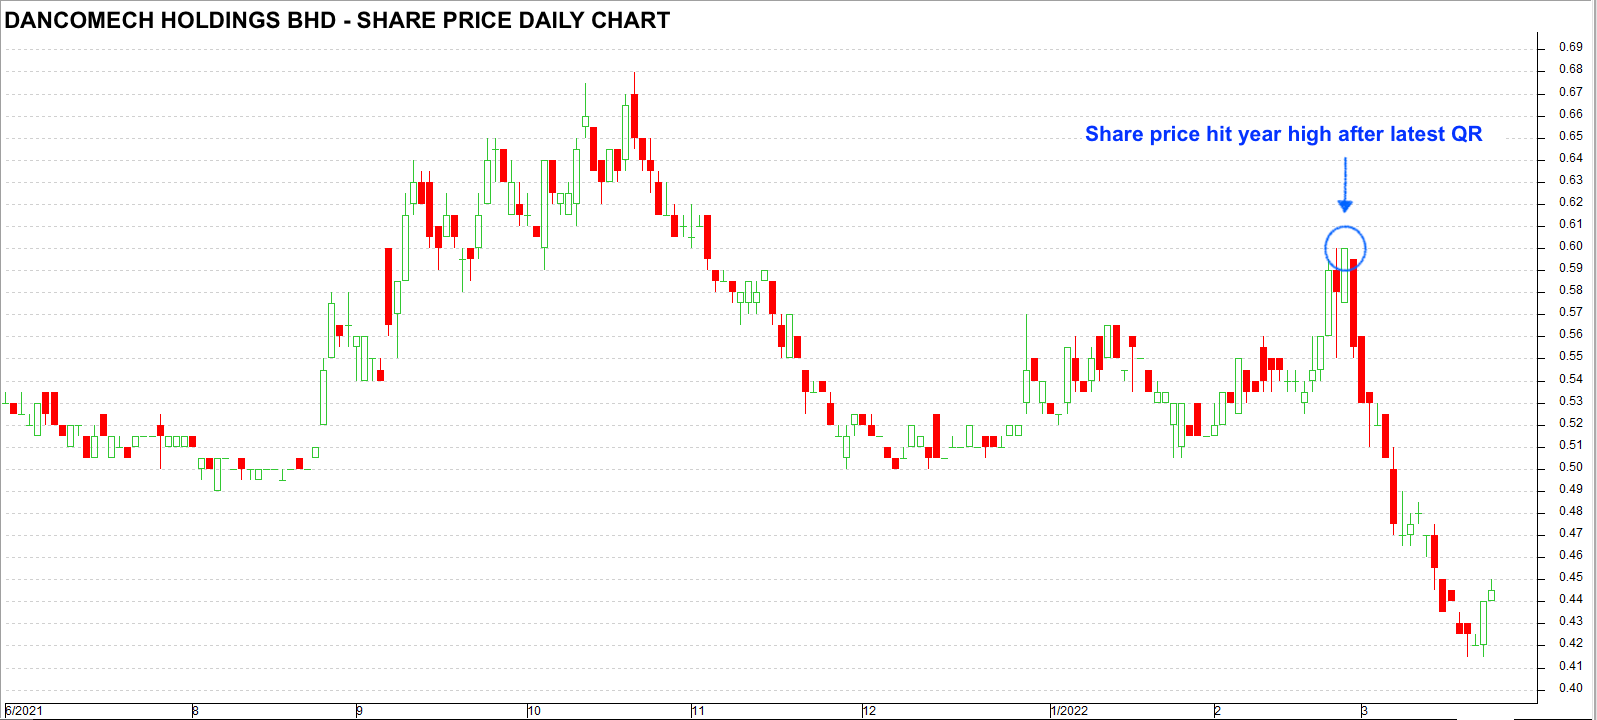 Danco share price